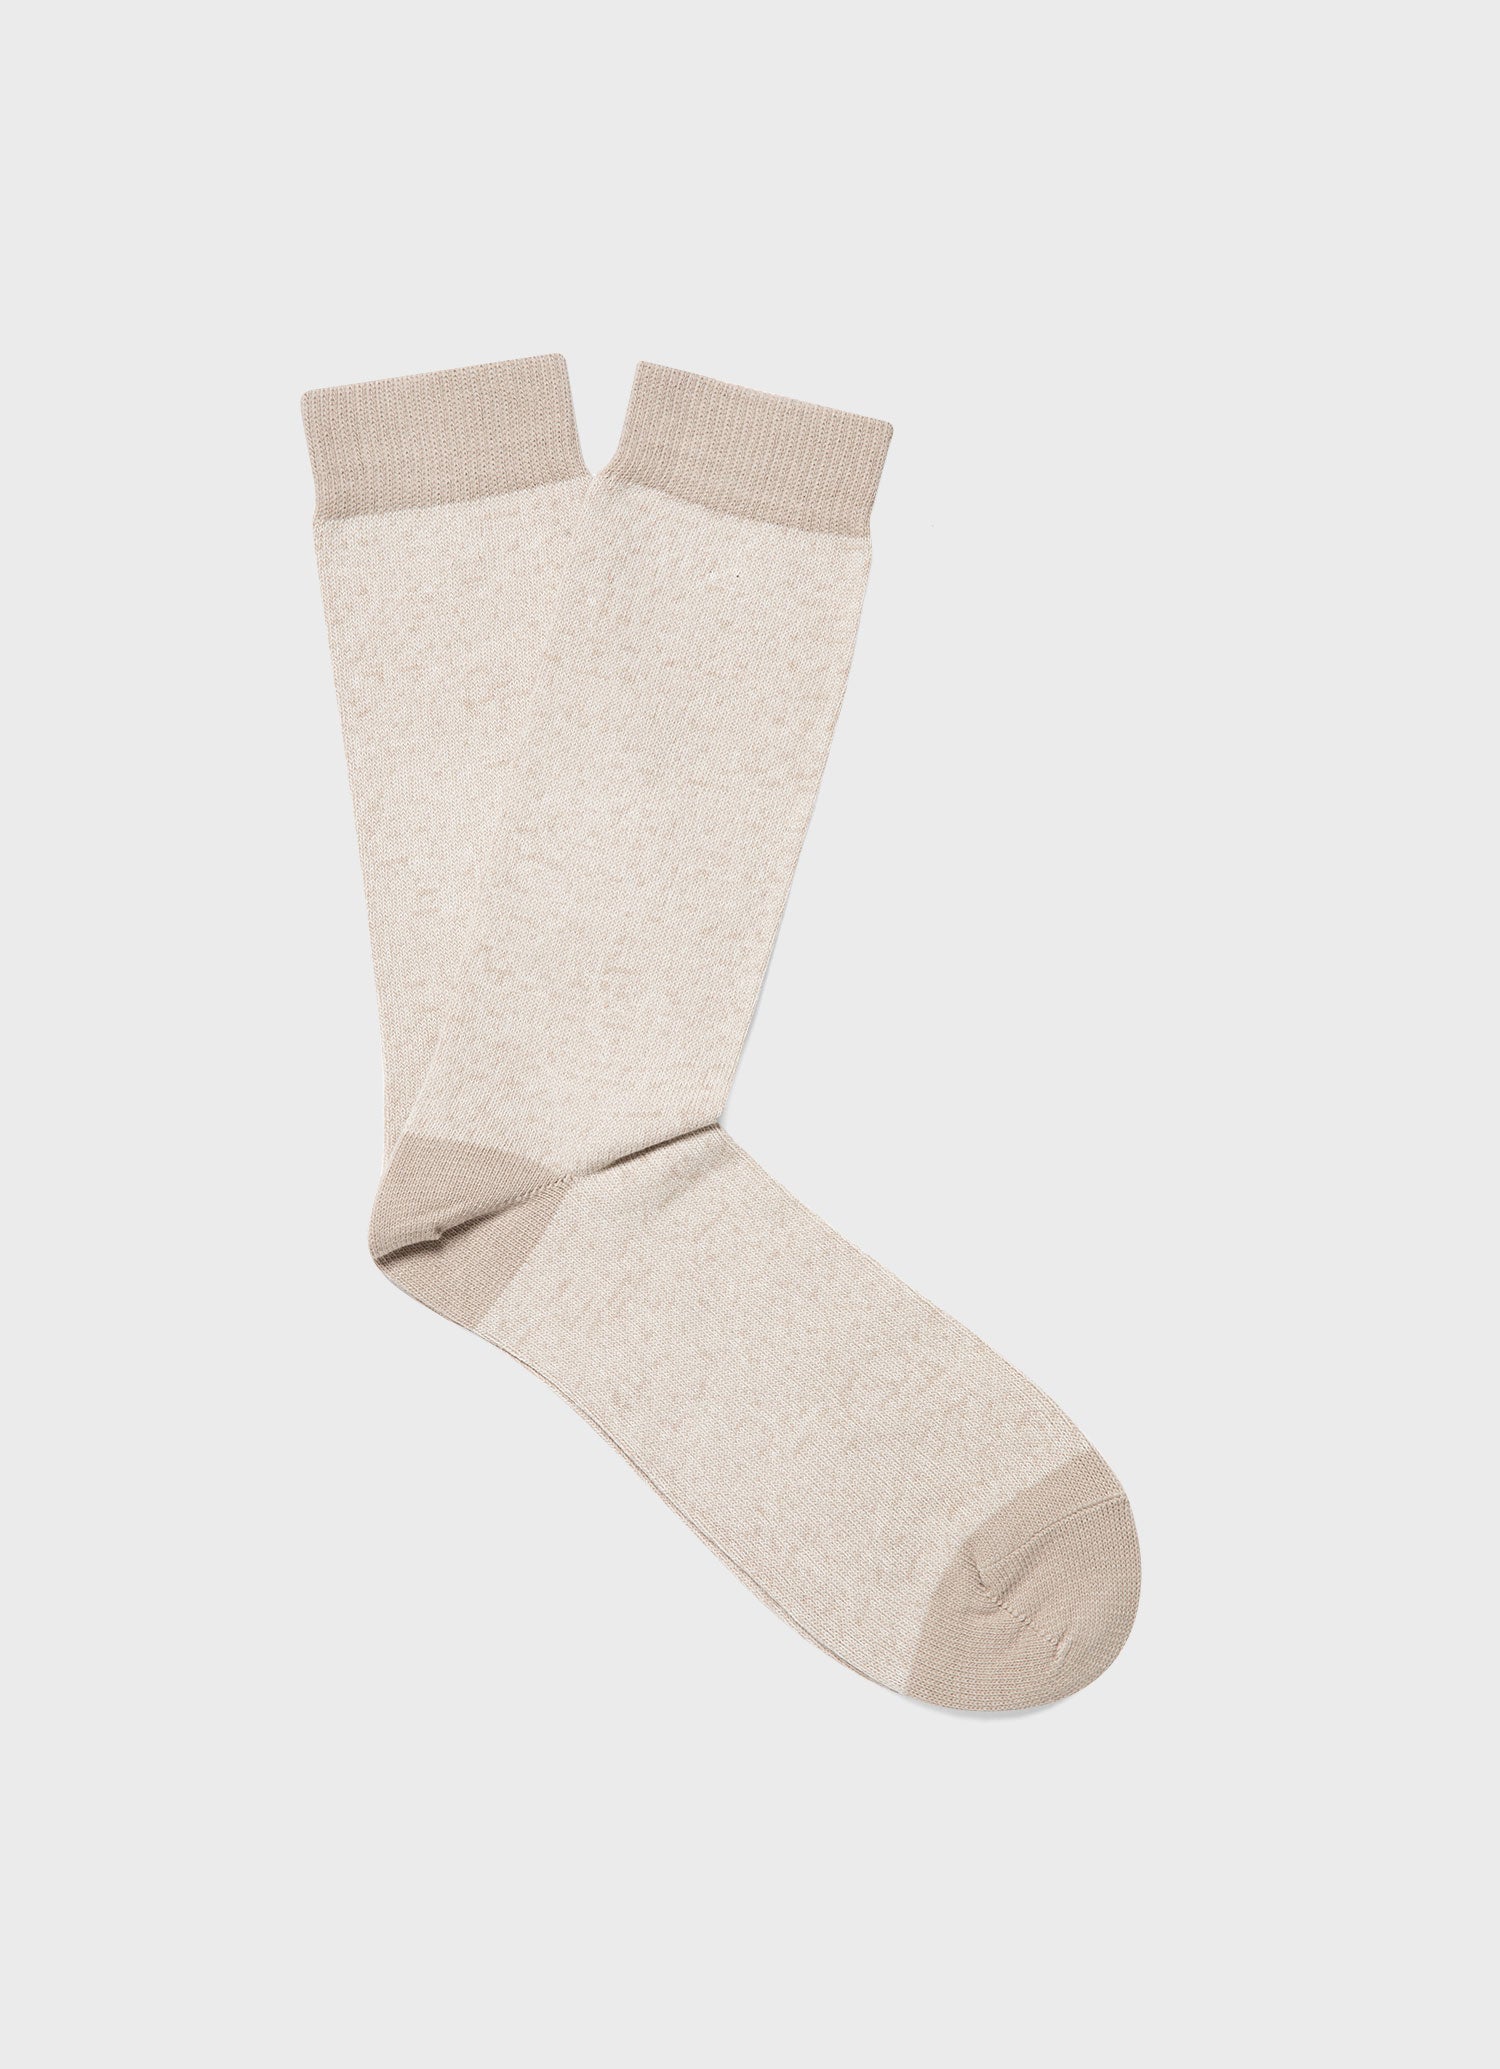 Men's Cotton Sock in Light Twist |